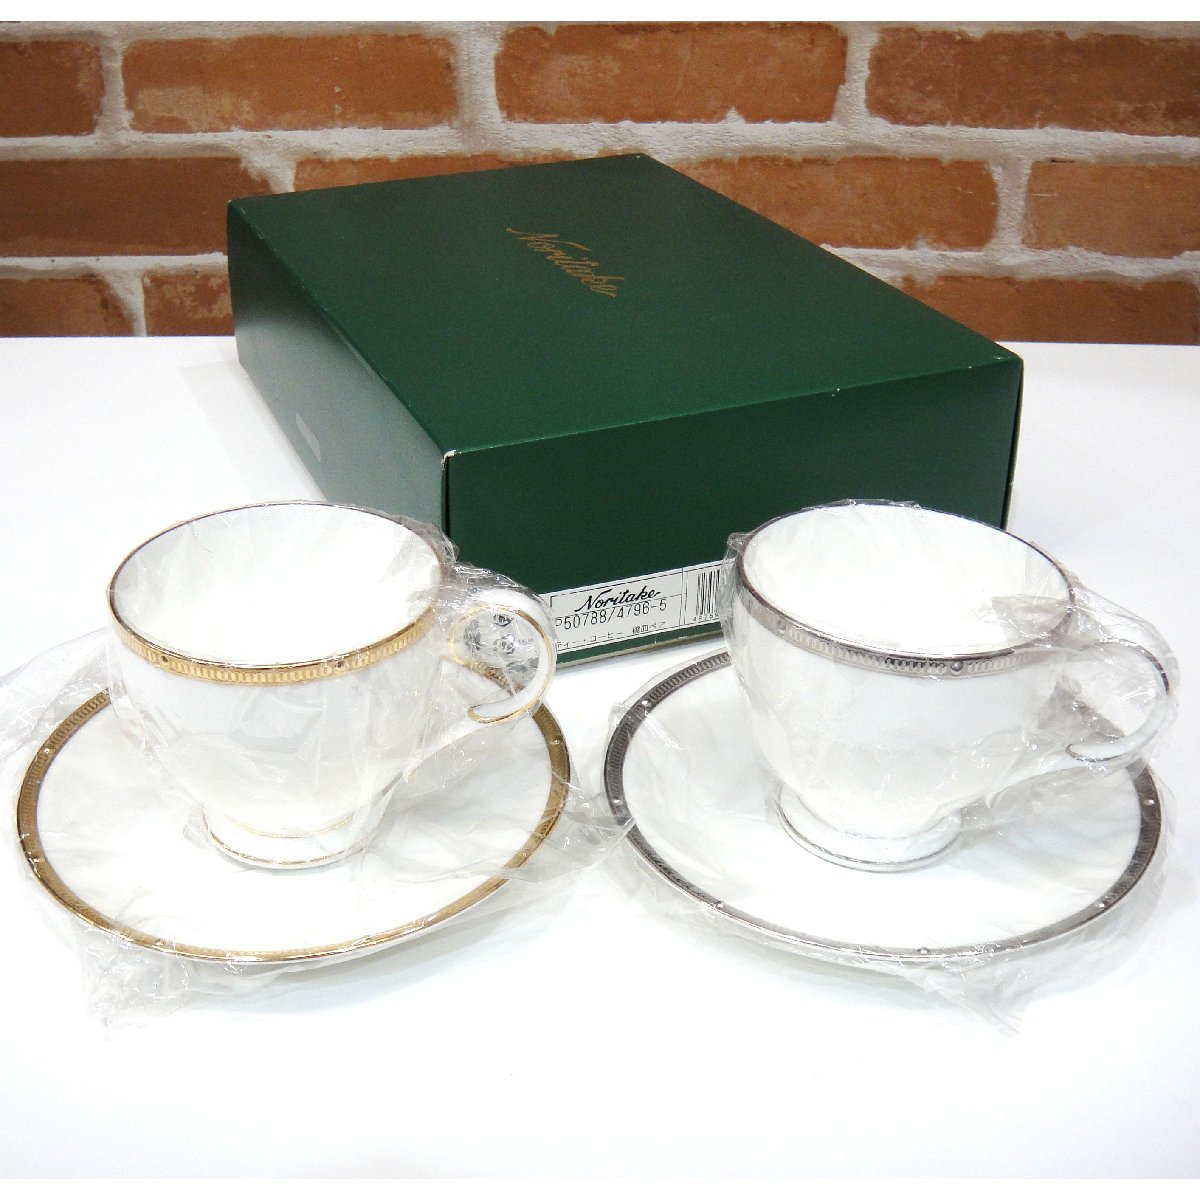 1356T　ノリタケ Noritake ティー コーヒー 碗皿ペア カップ＆ソーサー ロシェルゴールド ロシェルプラチナ